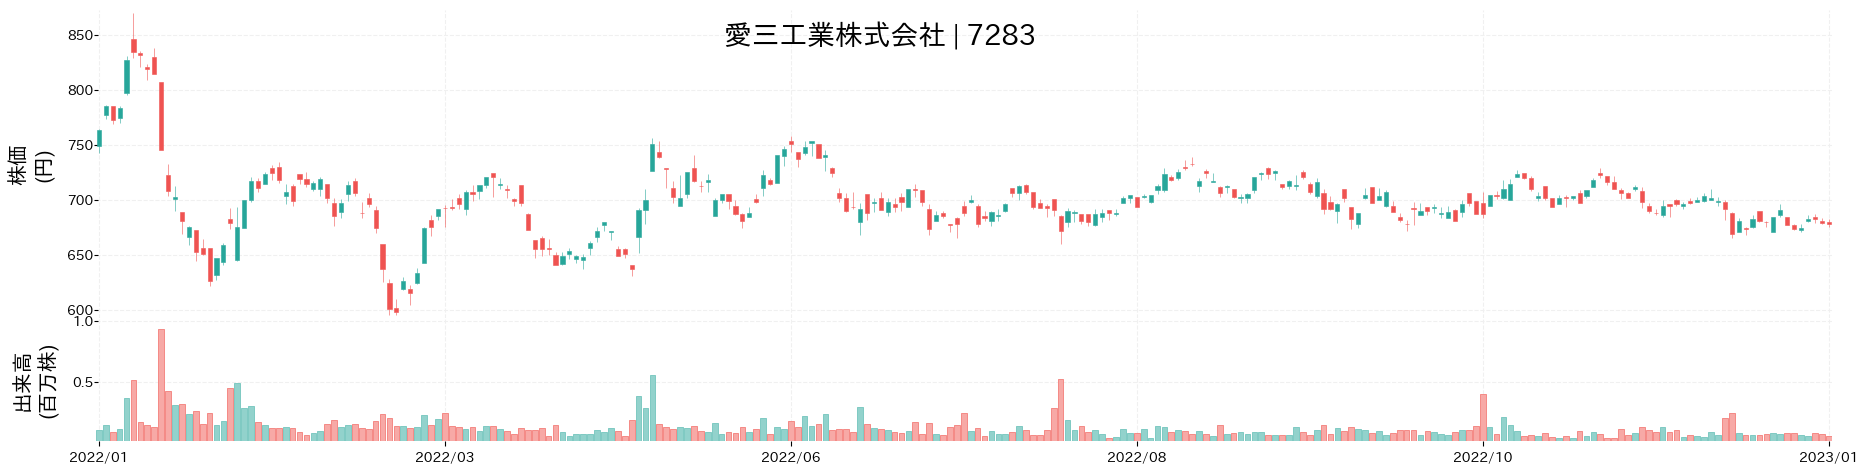 愛三工業の株価推移(2022)